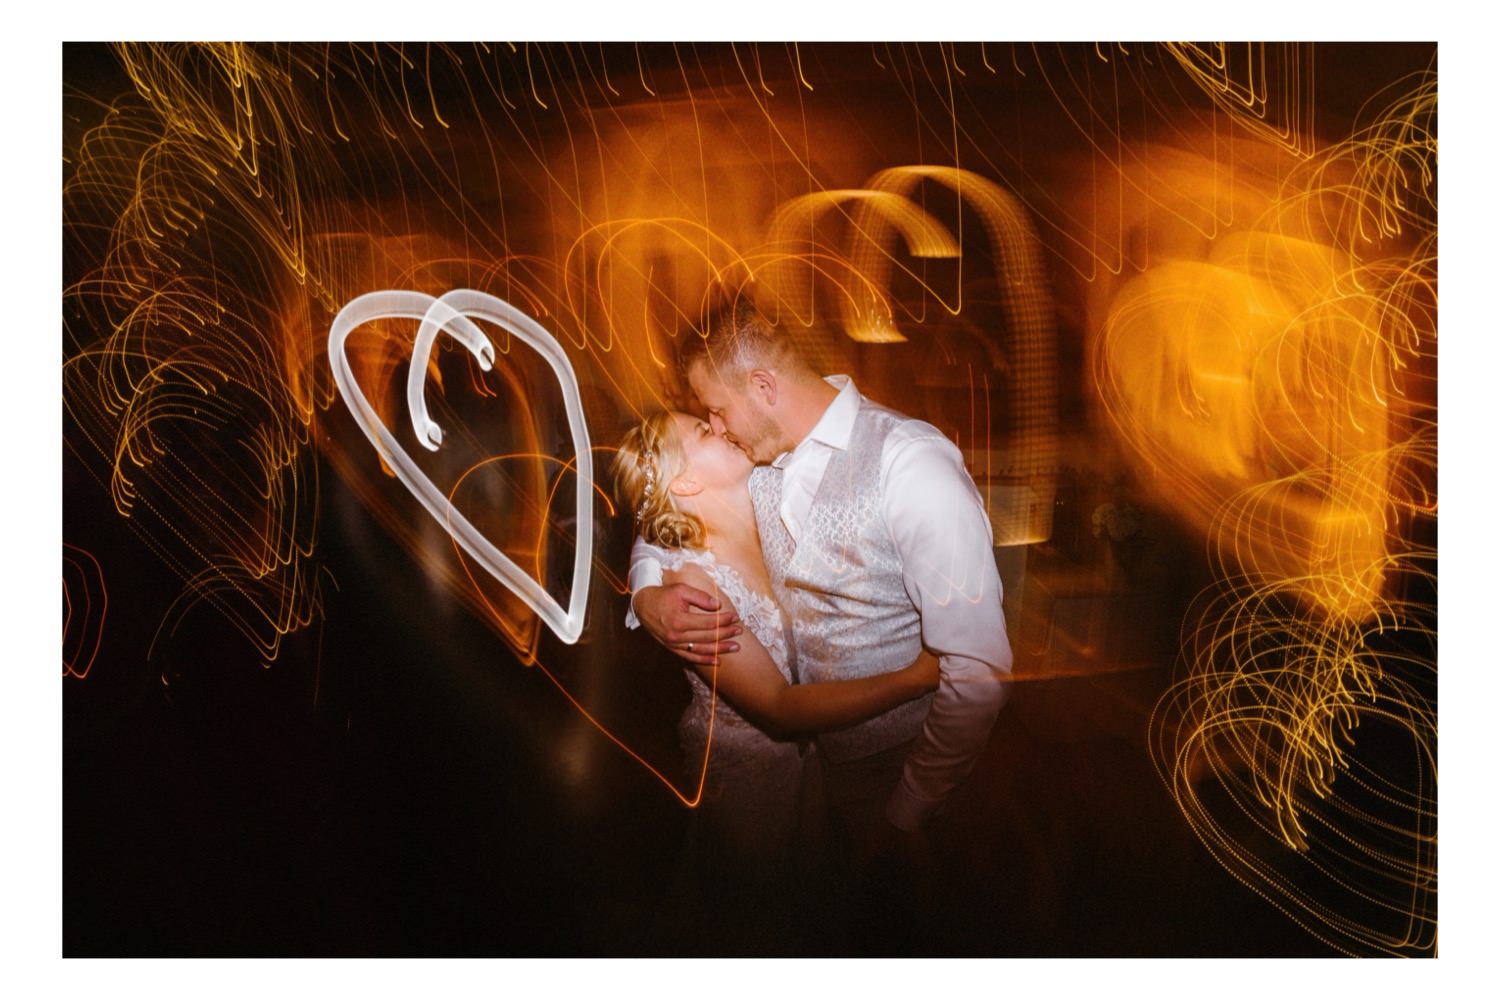 Das Brautpaar versinkt in einem verträumten Kuss auf der Tanzfläche, während der Hochzeitsfotograf mit einer Langzeitbelichtung ein strahlendes Herz um sie herum malt. Das Bild erfasst die Intimität und Romantik des Moments, während das leuchtende Herz die tiefe Liebe und Verbundenheit des Paares symbolisiert. Die sanfte Bewegung der Tanzenden und das warme Licht der Location verstärken die zauberhafte Atmosphäre und machen diesen Augenblick zu einem unvergesslichen Höhepunkt der Feier. Es ist ein Bild voller Leidenschaft und Zuneigung, das die Magie der Liebe perfekt einfängt und für die Ewigkeit festhält.